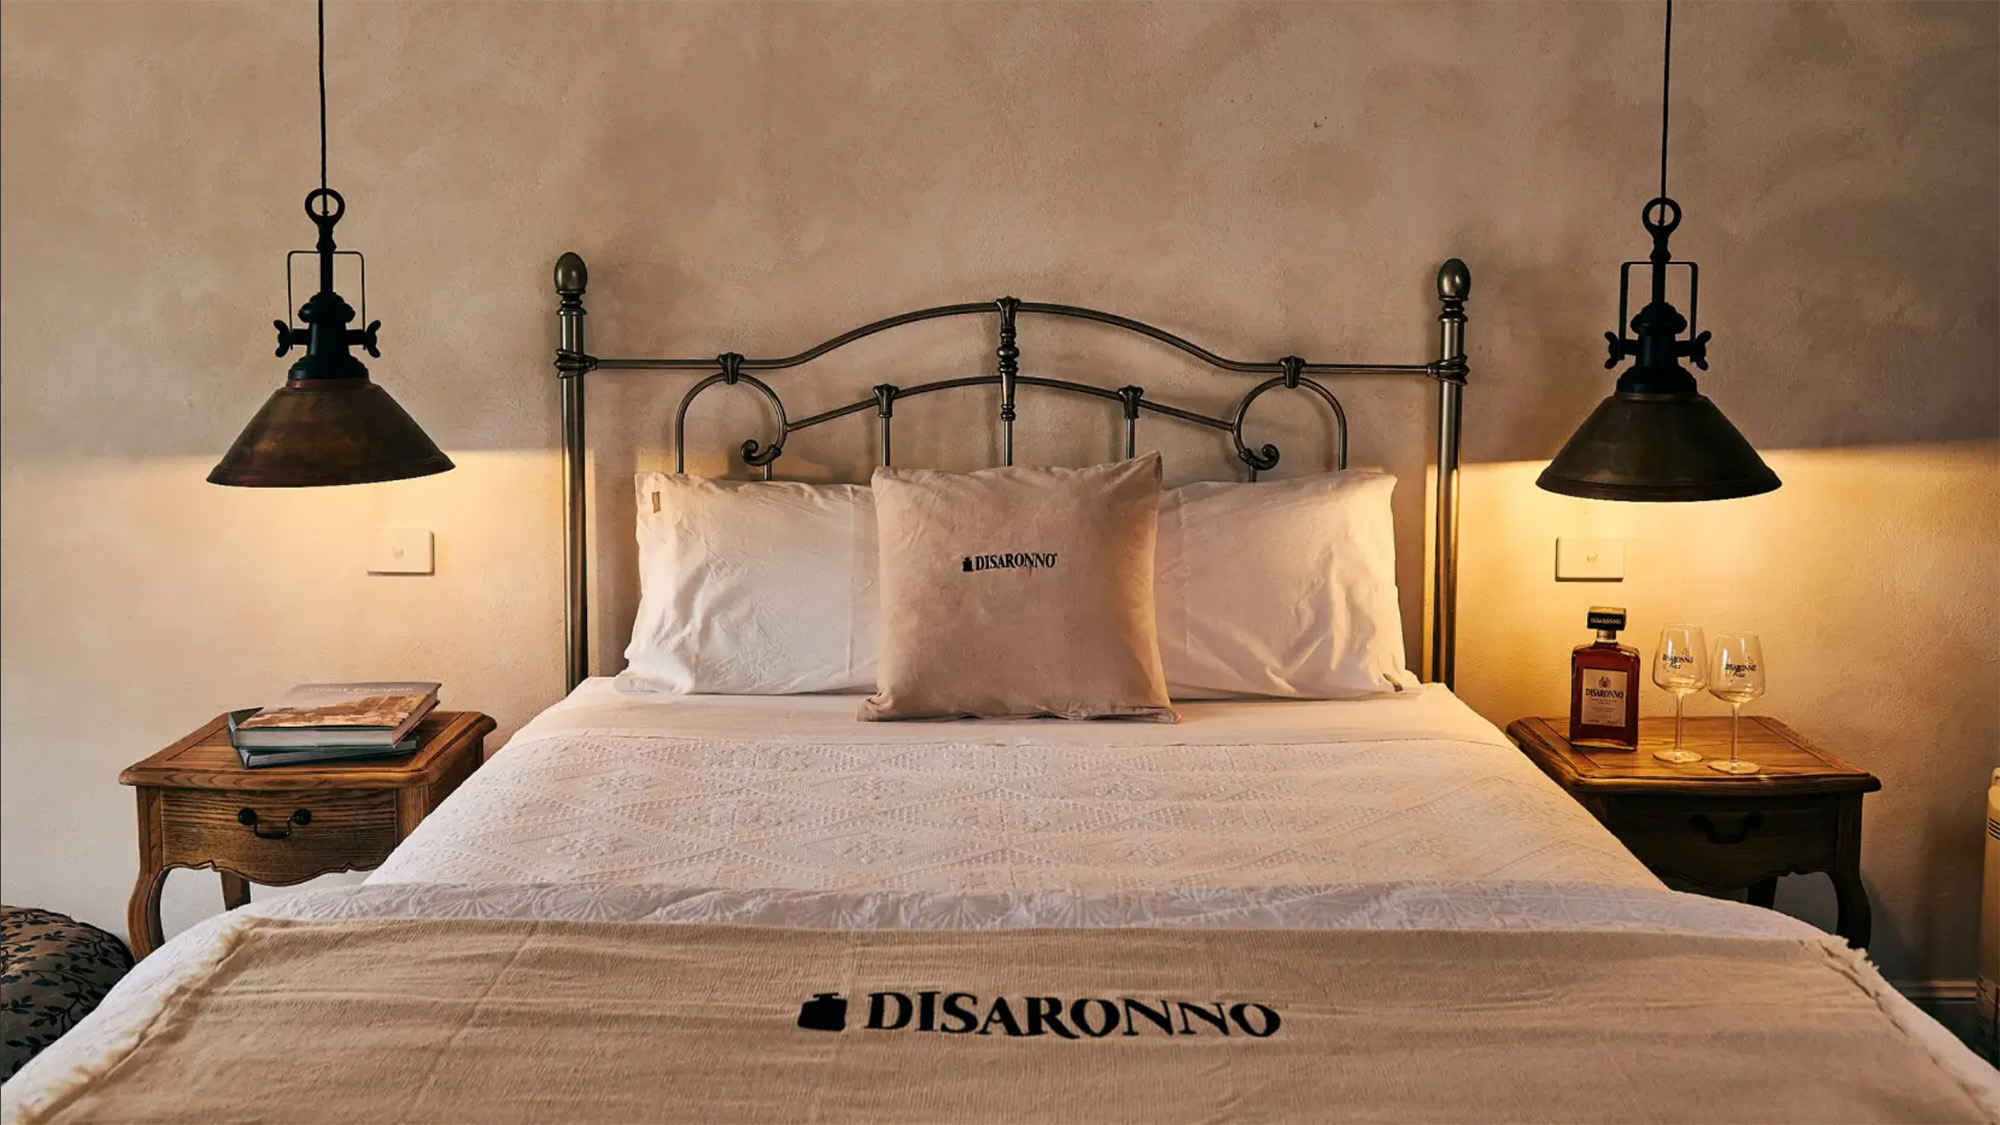 La Casa Del Disaronno bed